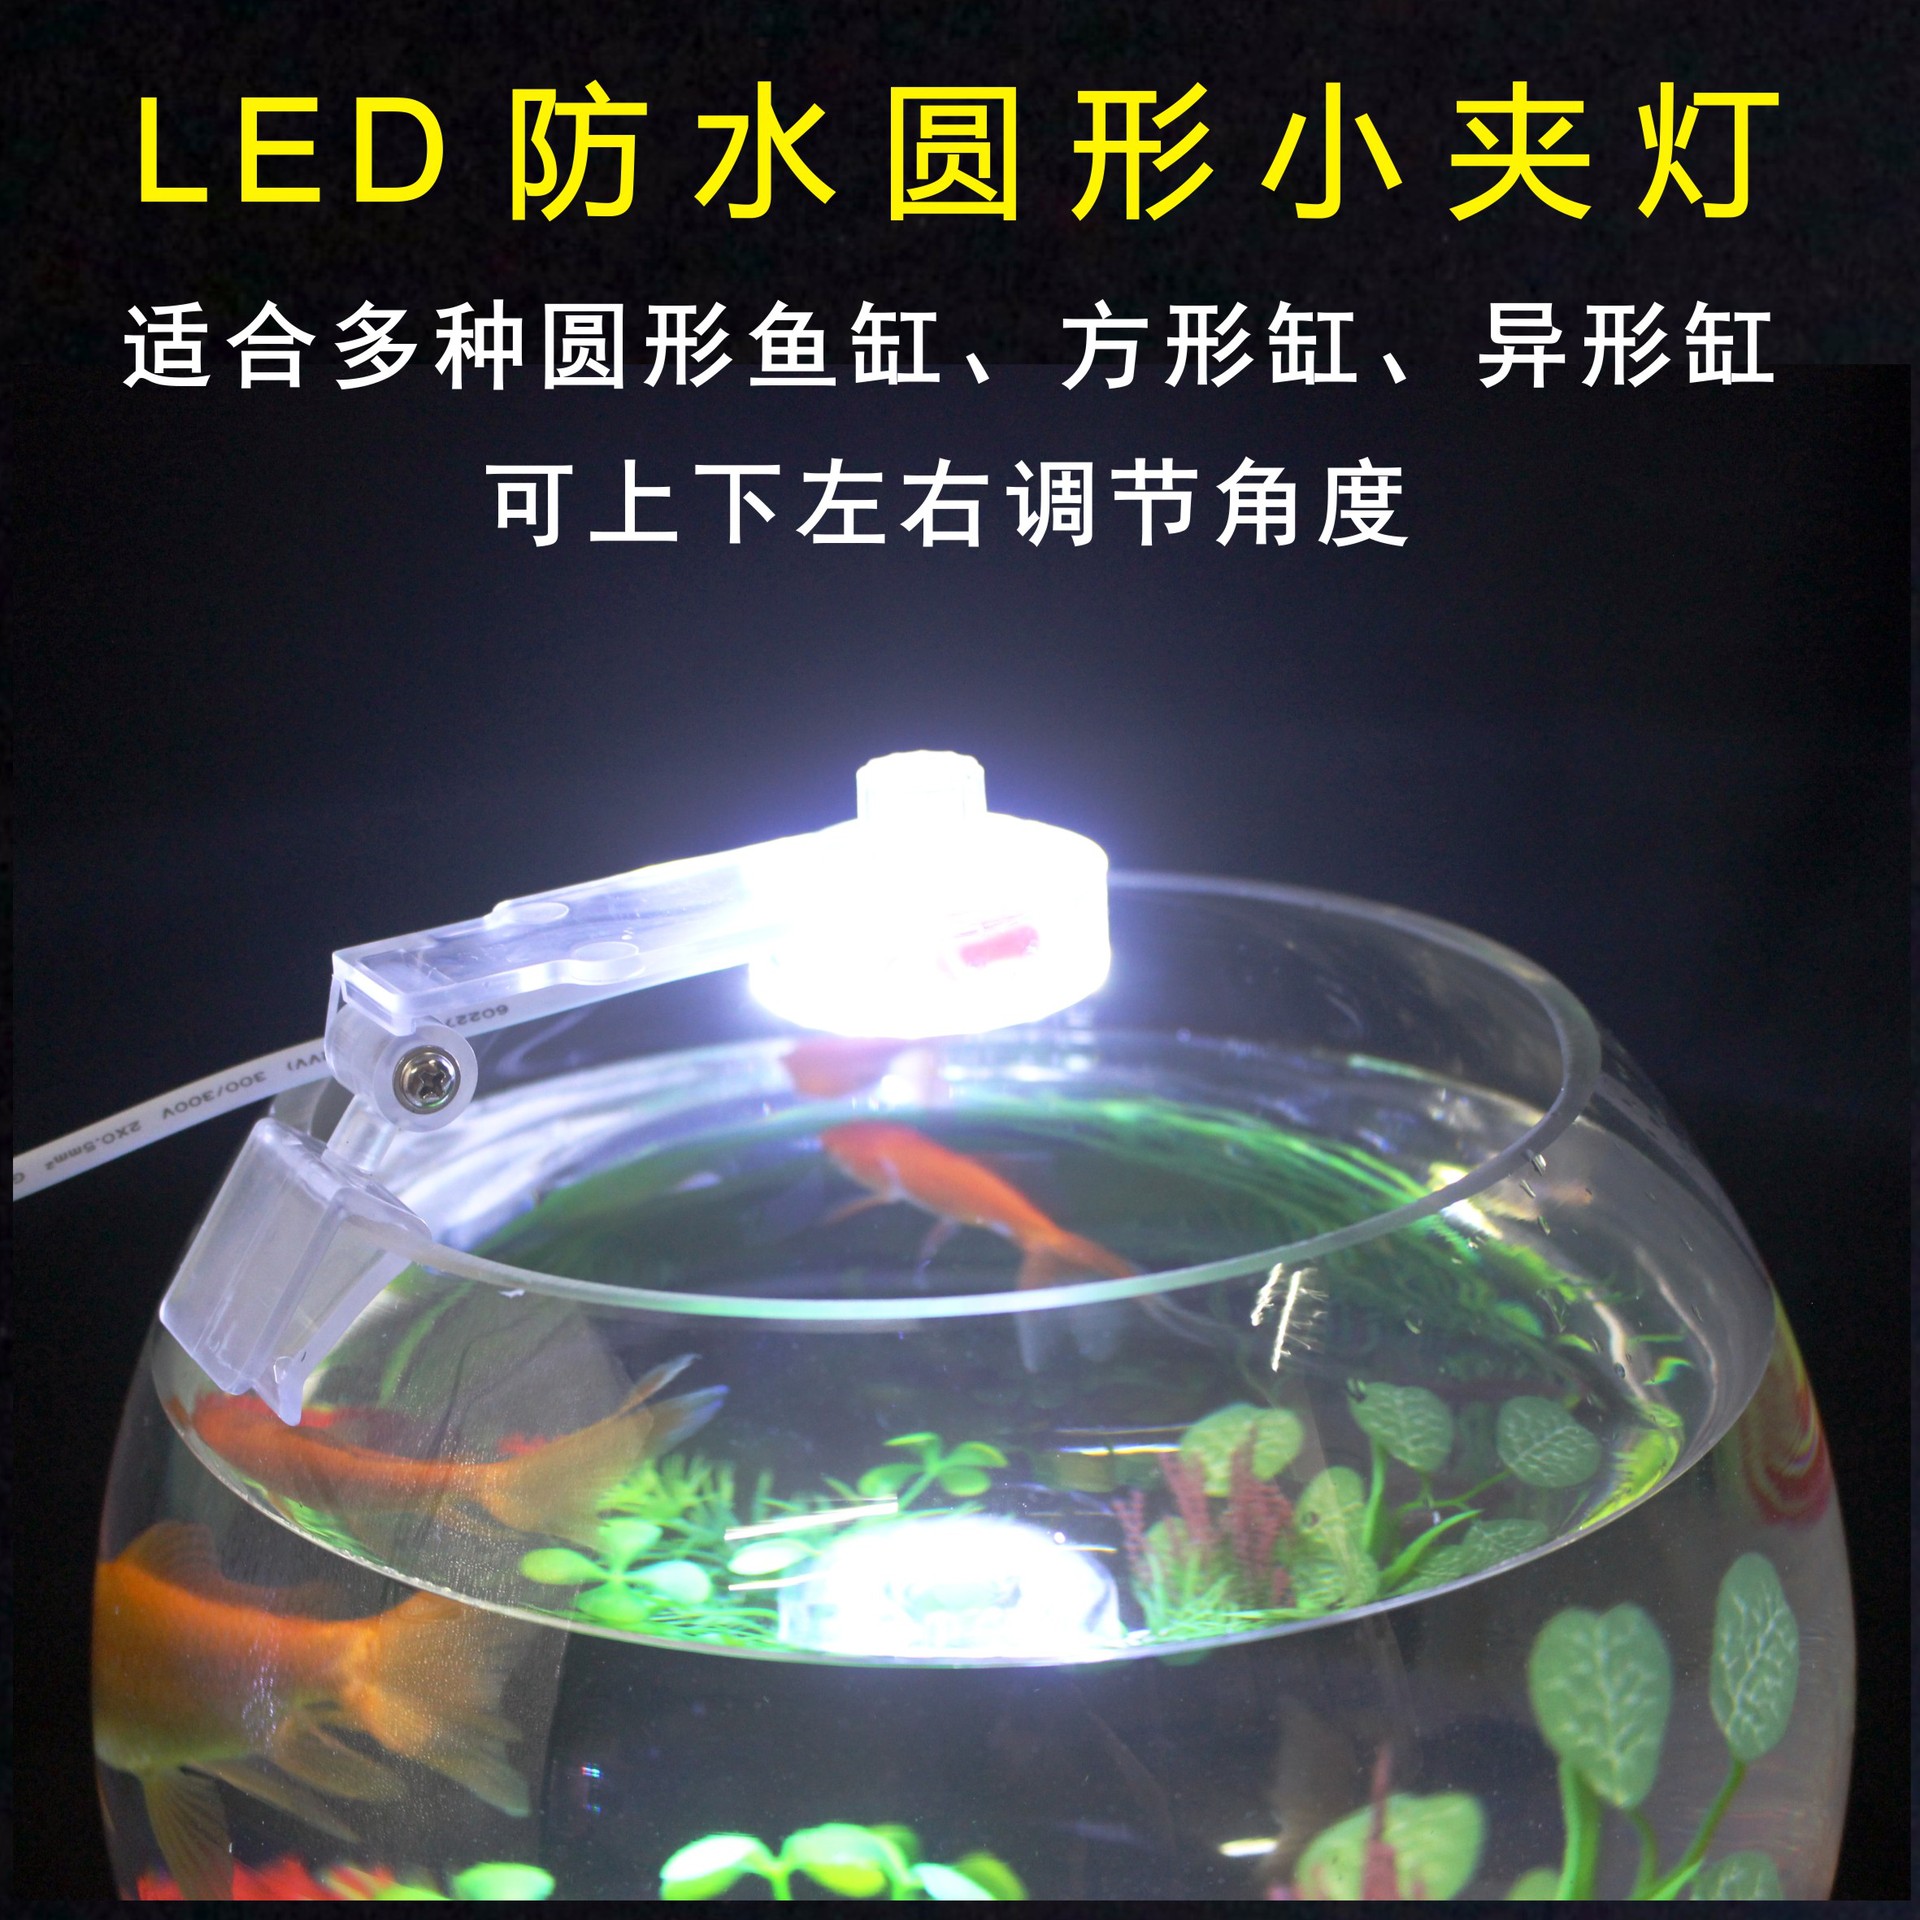 LED防水夹灯圆形鱼缸专用照明灯光水草造景装饰灯布景迷你小圆灯